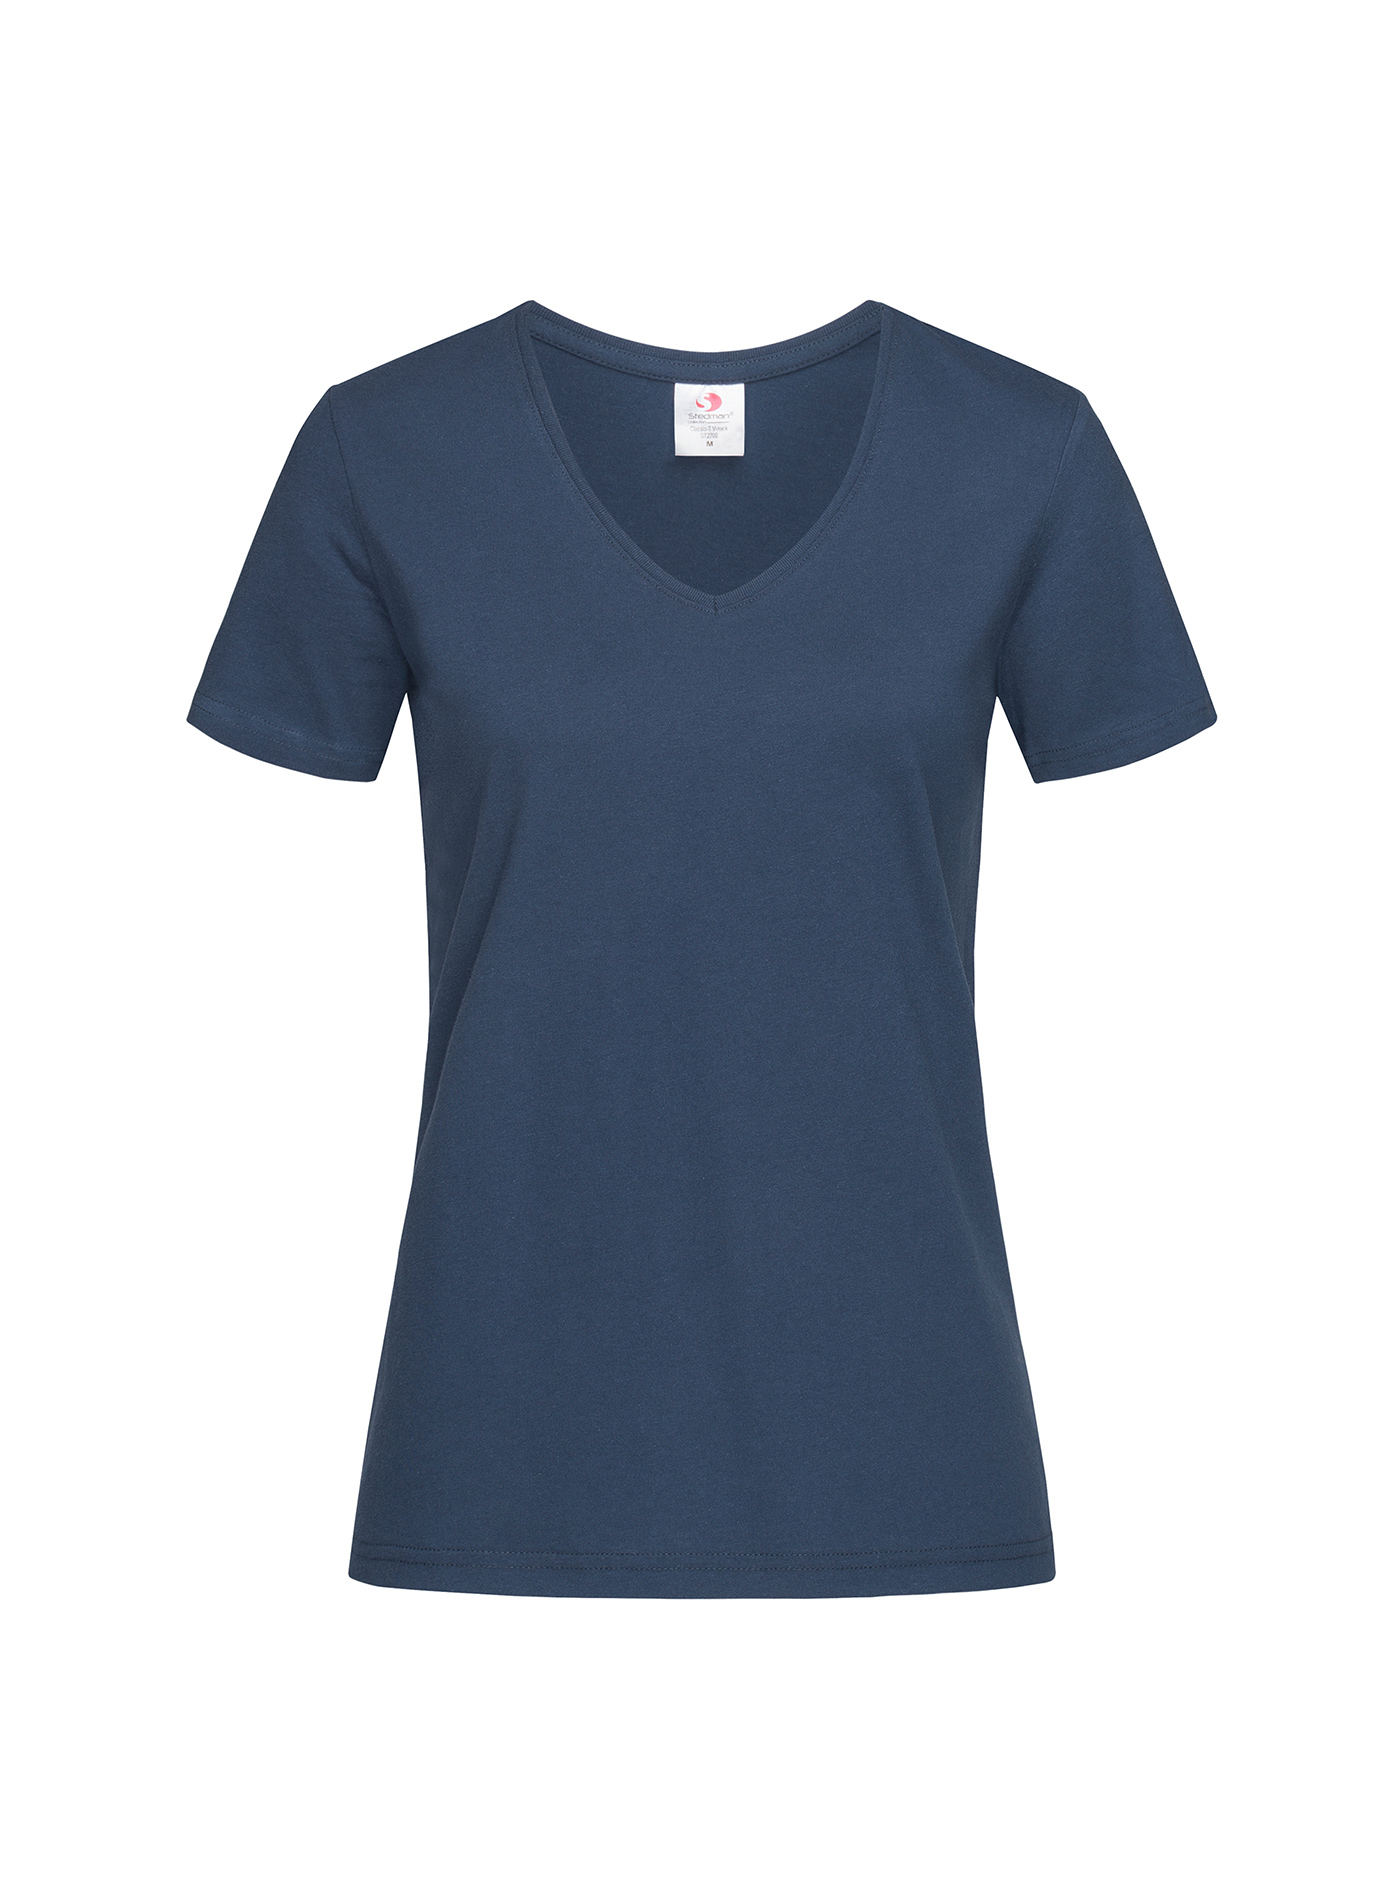 Dámské tričko s V-výstřihem Stedman - Námořnická modrá XL